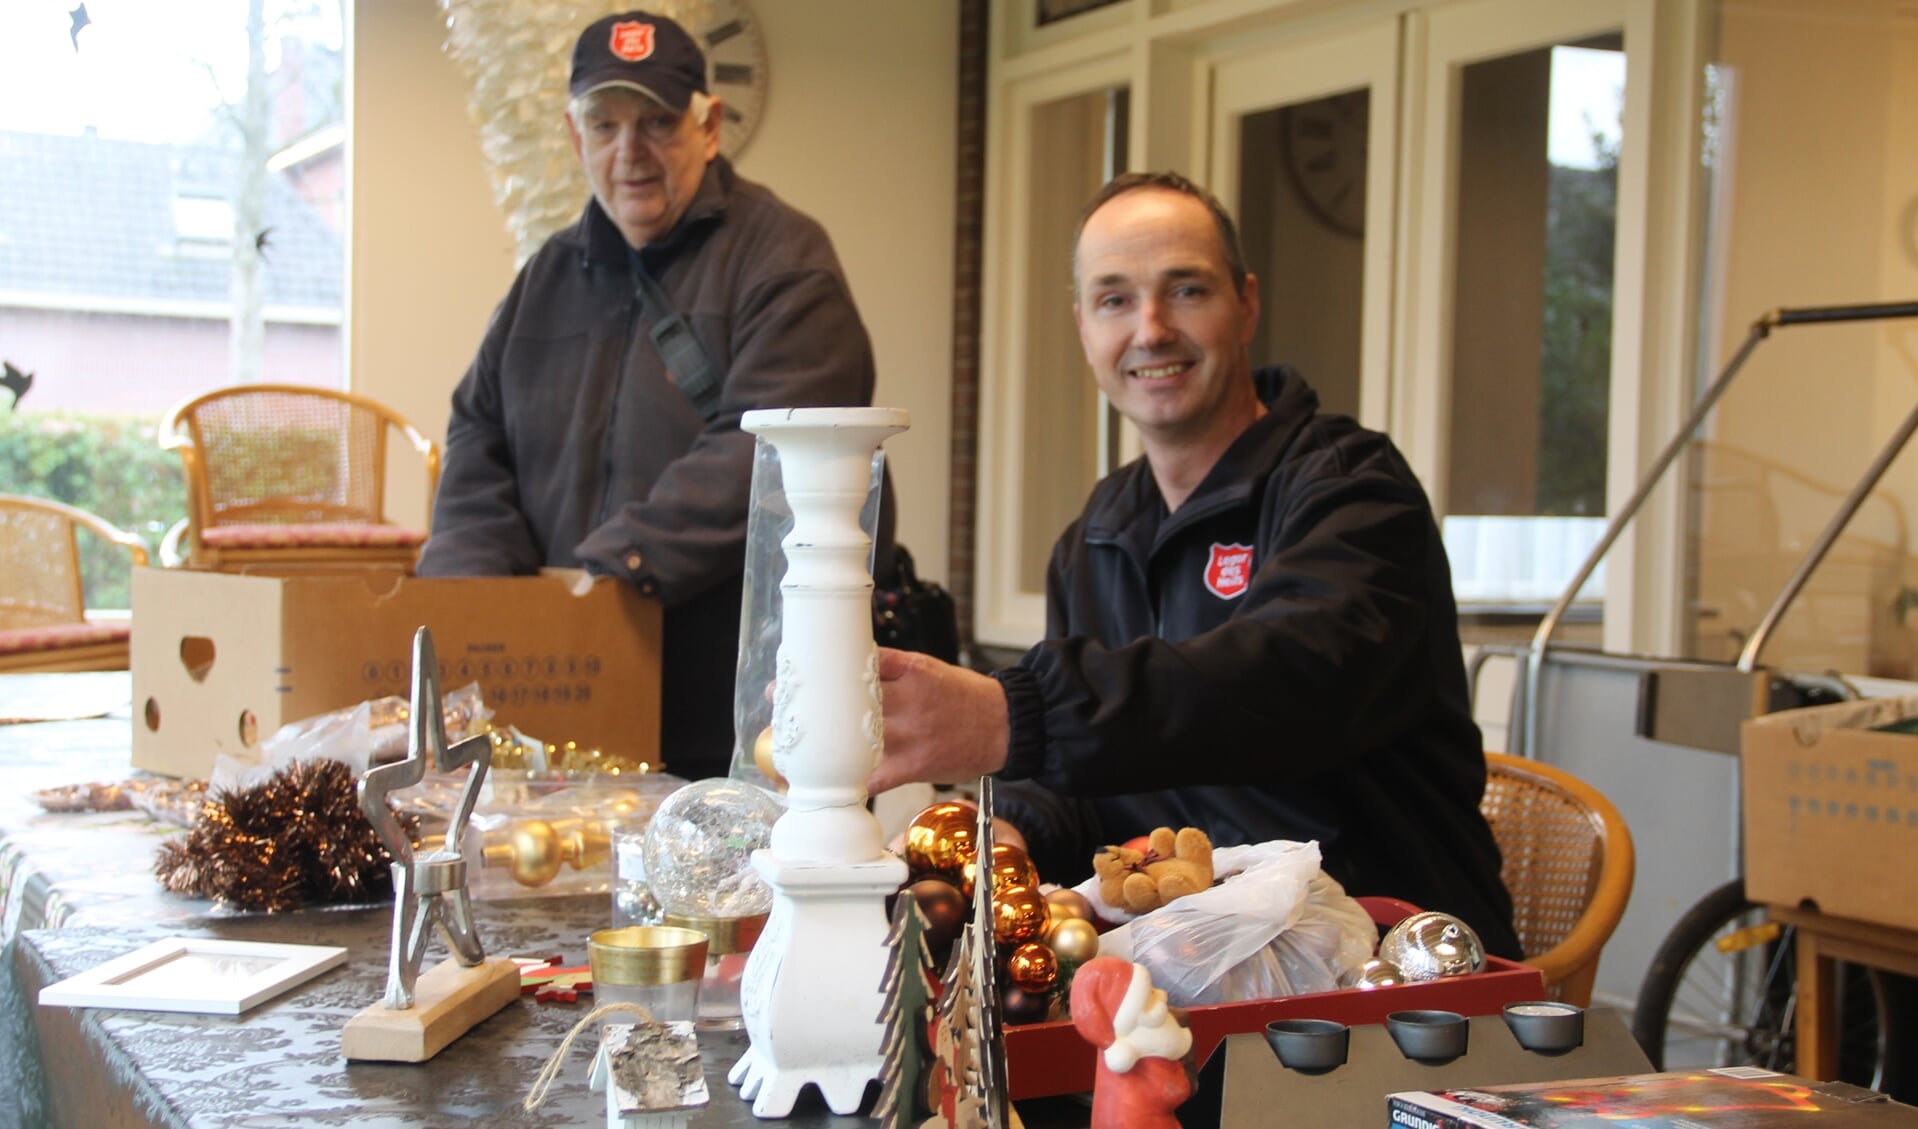 Arnold Vellekoop en vrijwilliger Bernhard bij de tafel met kerstartikelen. Foto Lineke Voltman